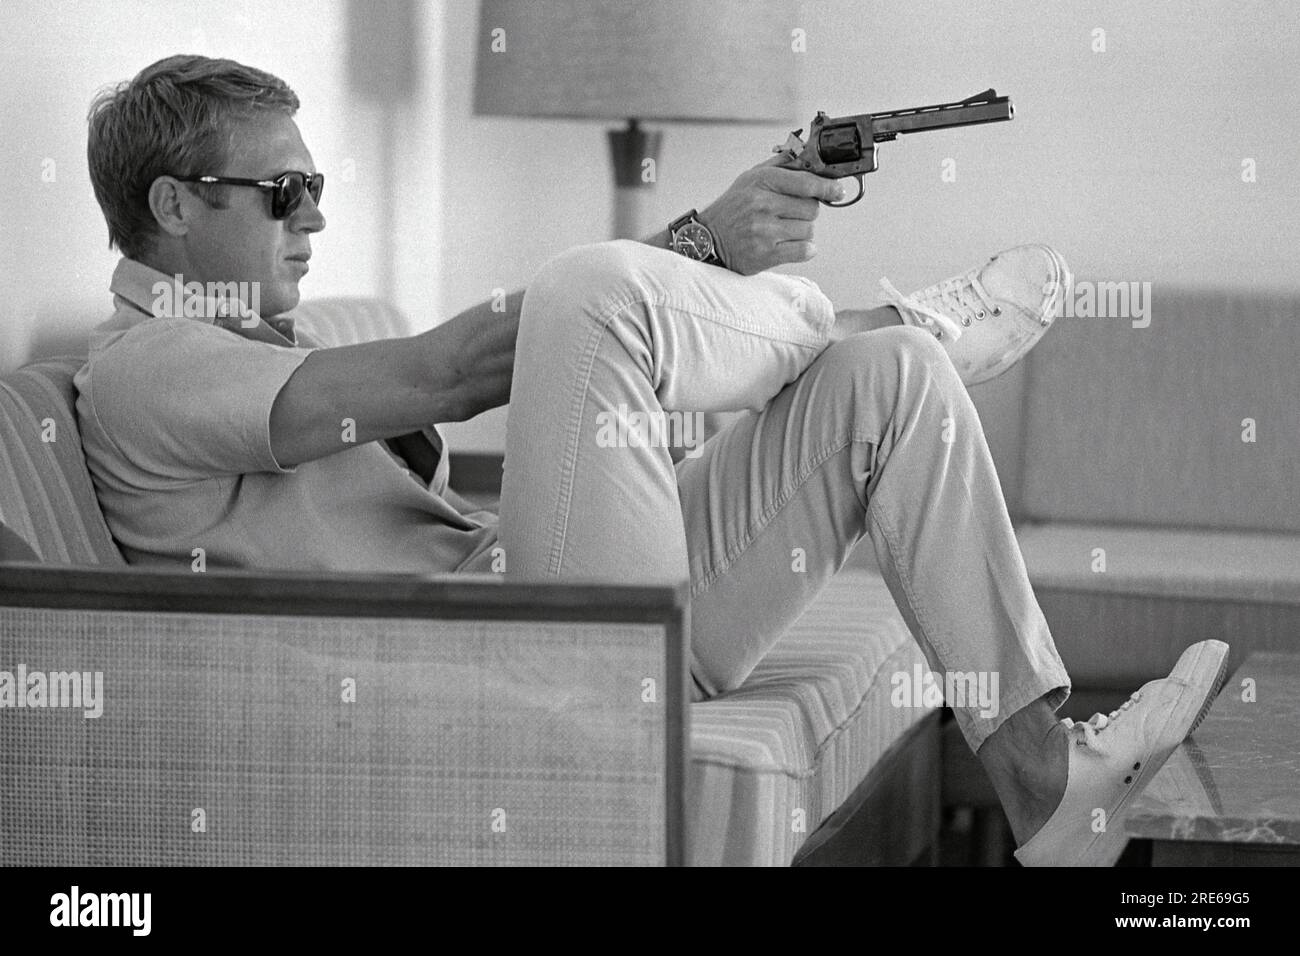 Profilansicht des amerikanischen Schauspielers Steve McQueen (1930 - 1980), der in seinem Haus in Palm Springs, Kalifornien, auf einem Sofa sitzt und eine Sonnenbrille über seine Augen zieht, während er mit einer Handfeuerwaffe zielt. Steve McQueen, weithin als einer der coolsten und charismatischsten Schauspieler der 1960er und 1970er Jahre bekannt, trägt ein weißes Hemd und blaue Jeans. Steve McQueen sieht konzentriert und entschlossen aus, mit einem leichten Funkeln im Auge und einem festen Griff um seine Waffe. Der Hintergrund ist unscharf und unscharf, was dem Babysitter ein Gefühl der Isolation vermittelt. Die allgemeine Stimmung des Bildes ist eine von Robustheit, Selbstvertrauen und einem Gefühl der Gefahr. Stockfoto